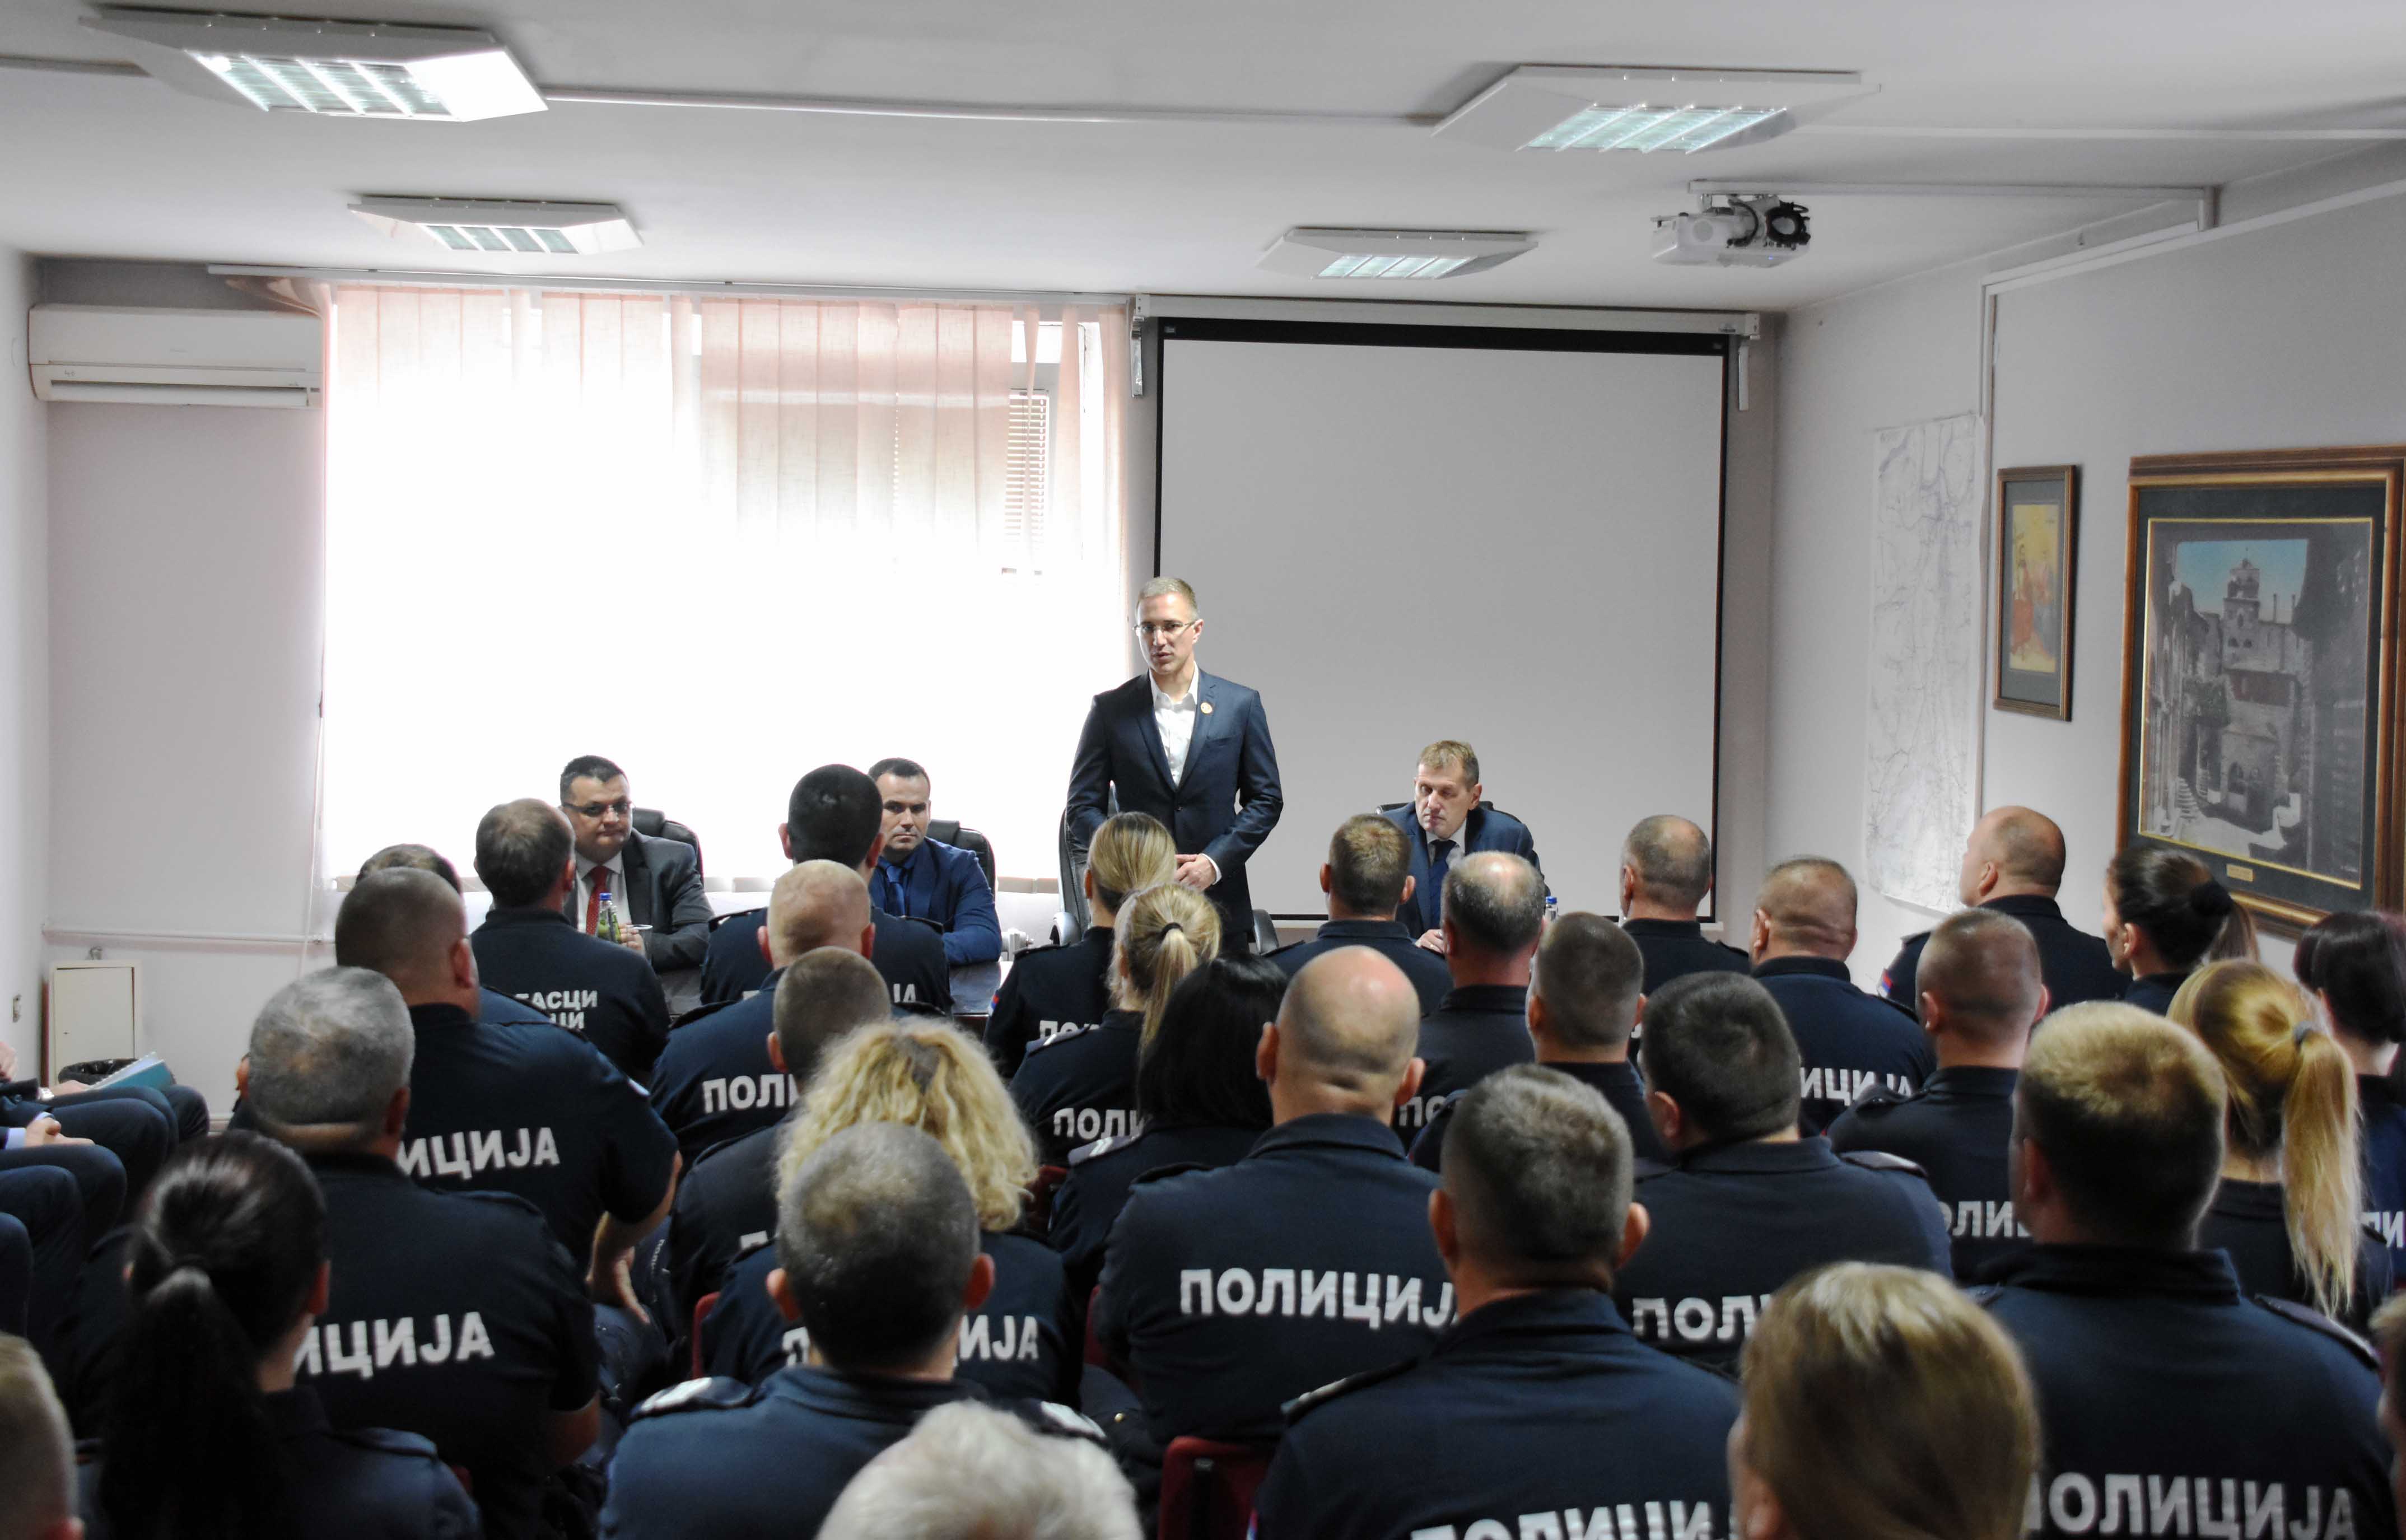 Министар Стефановић разговарао са руководиоцима и полицијским службеницима Полицијске станице Обреновац